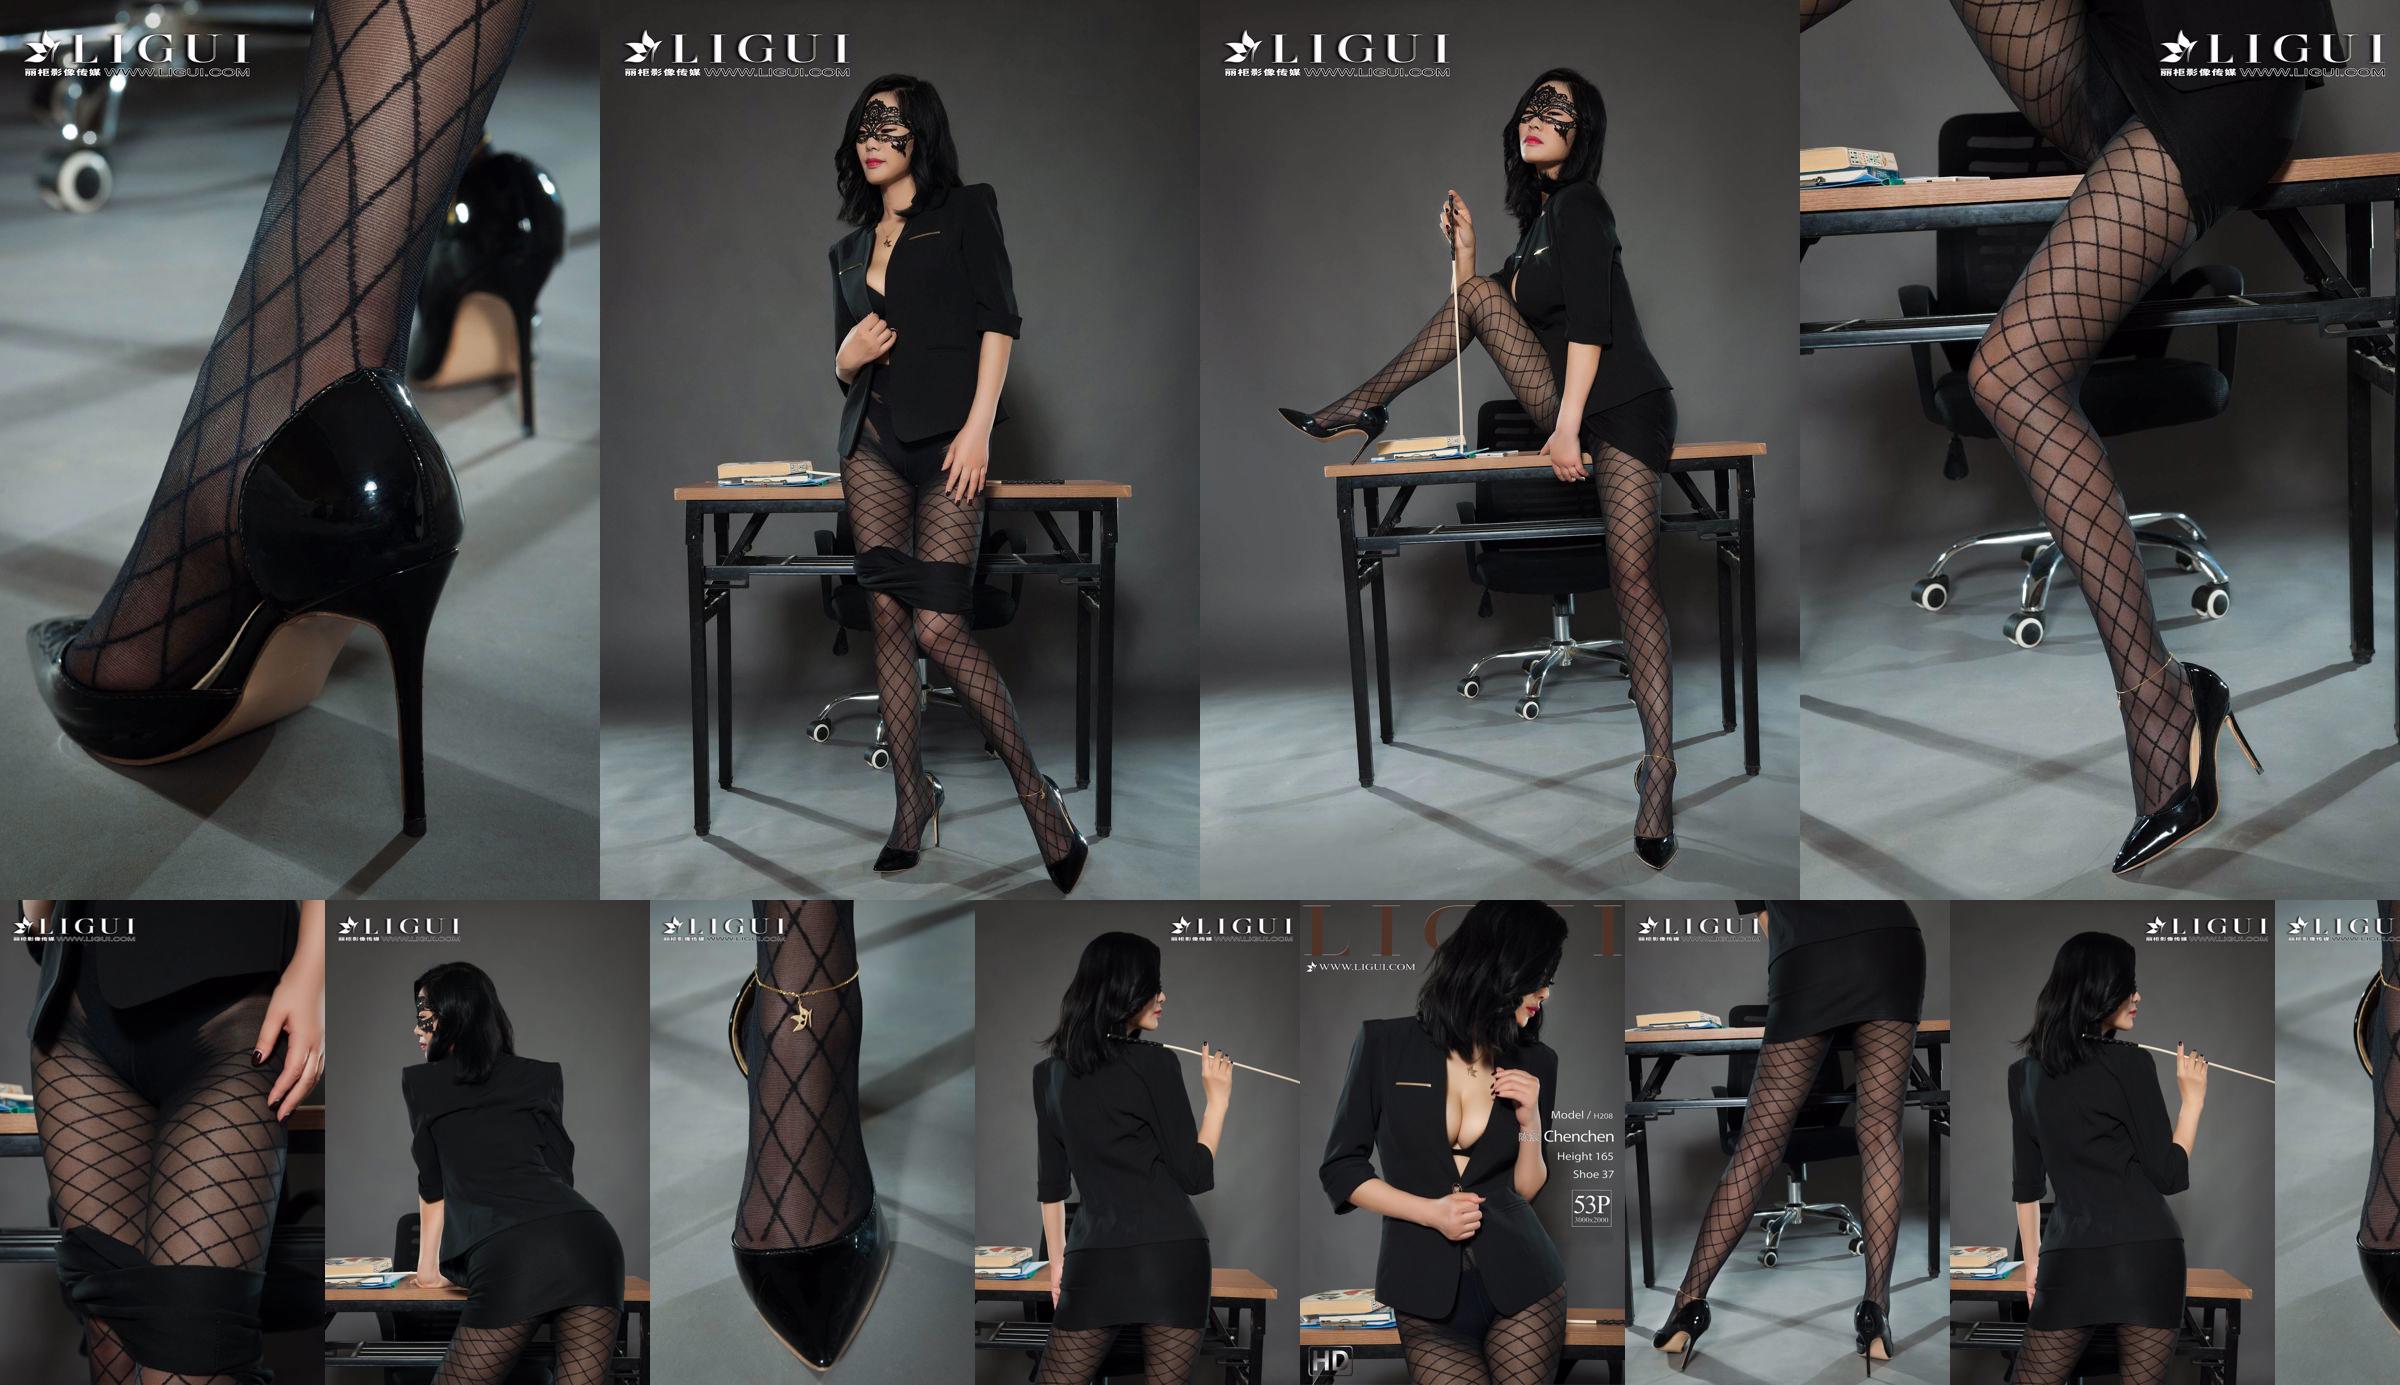 Người mẫu chân Chen Chen "Black Silk Milf" [Ligui Liguil] Vẻ đẹp Internet No.09dcb3 Trang 1